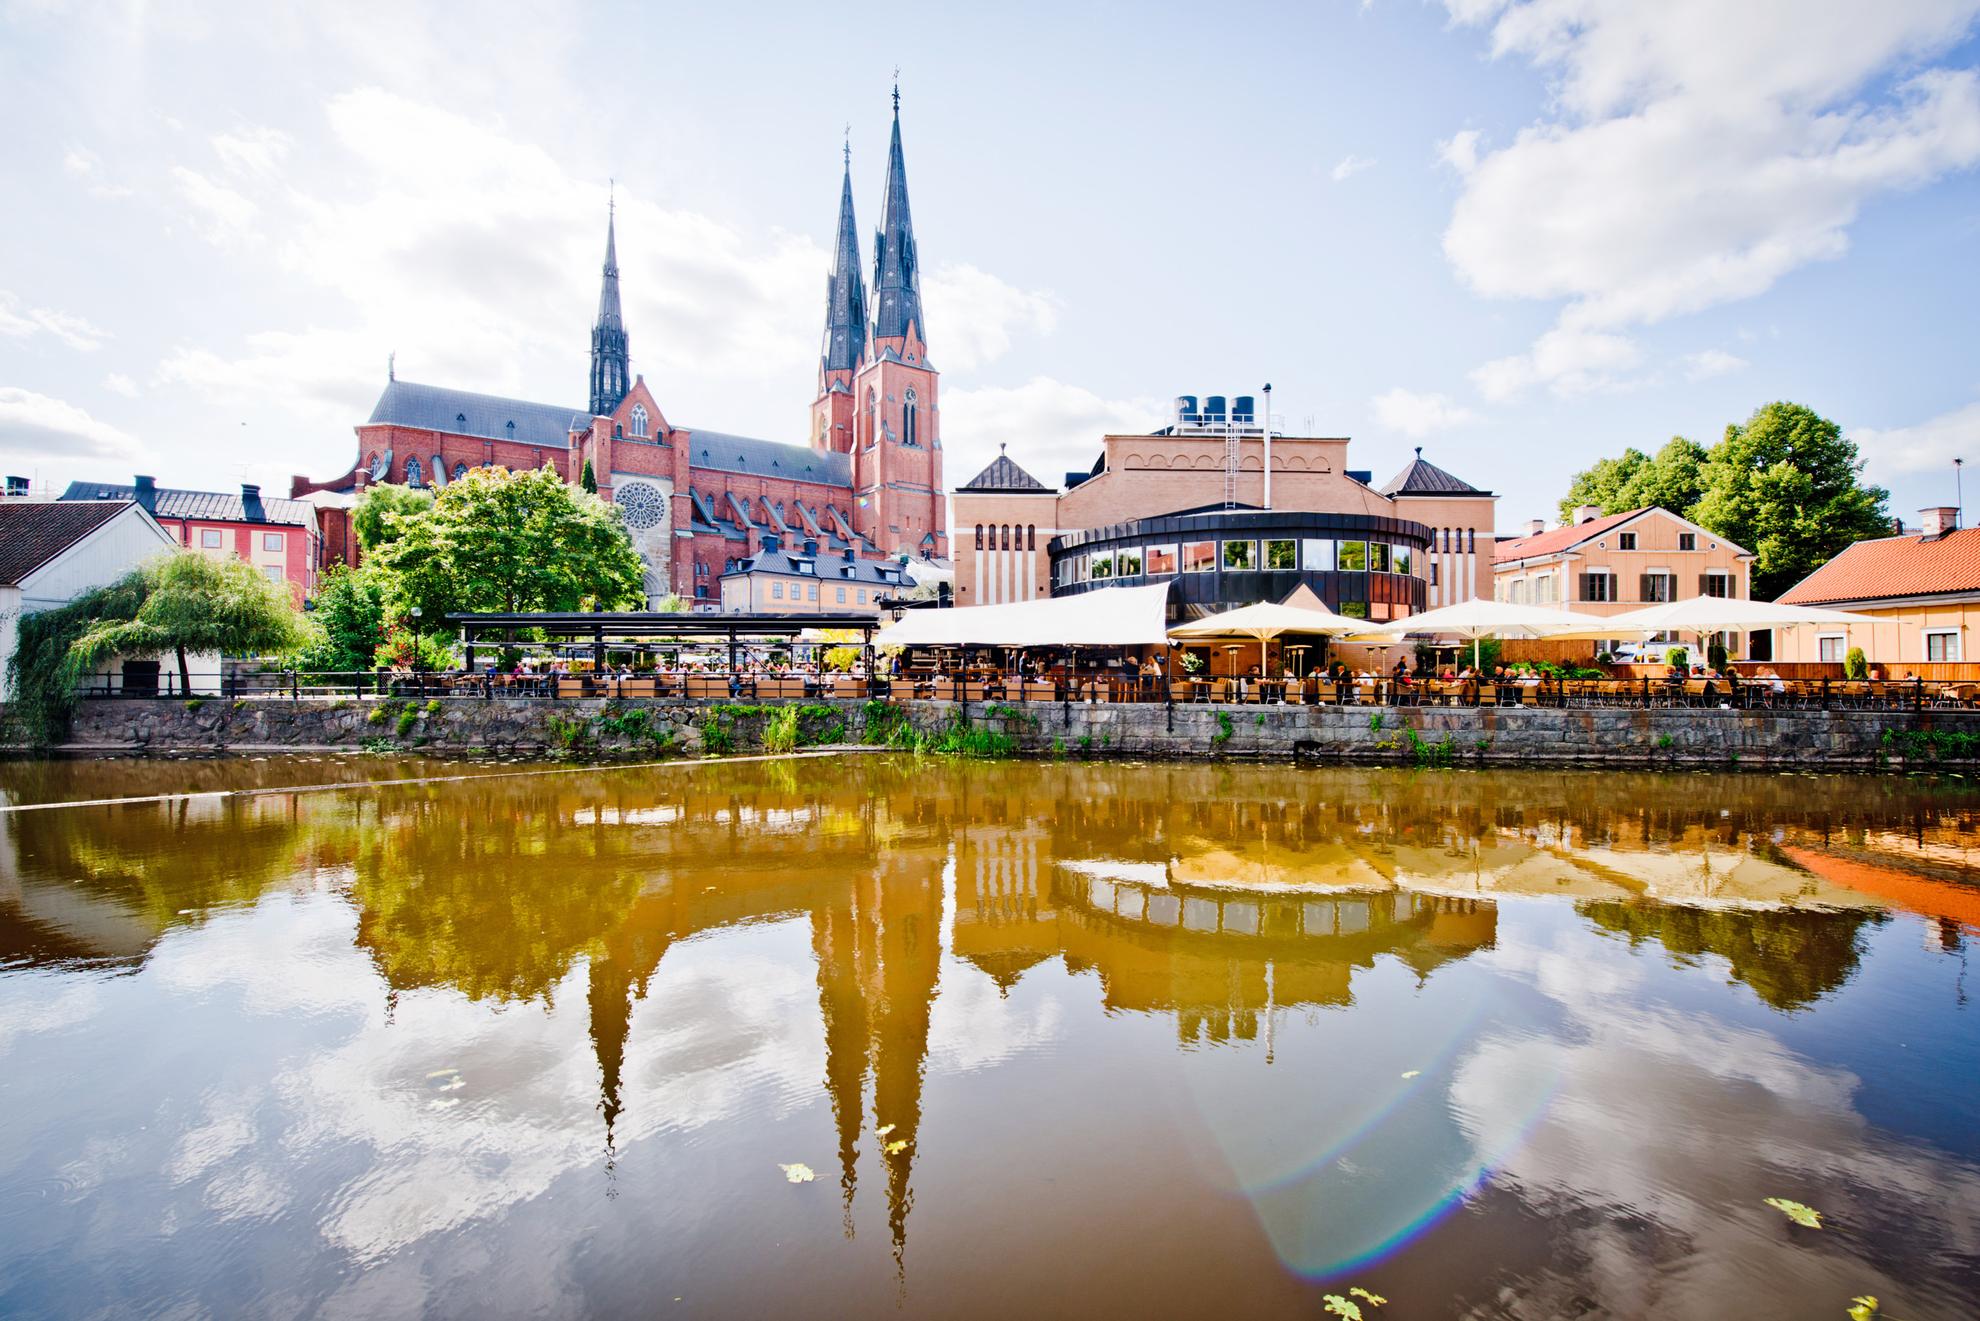 Op de achtergrond rijst de kathedraal van Uppsala de lucht in. Ervoor staan ​​andere gebouwen en een buitenterras met veel stoelen. De gebouwen van de stad worden weerspiegeld in het water van de rivier de Fyris.